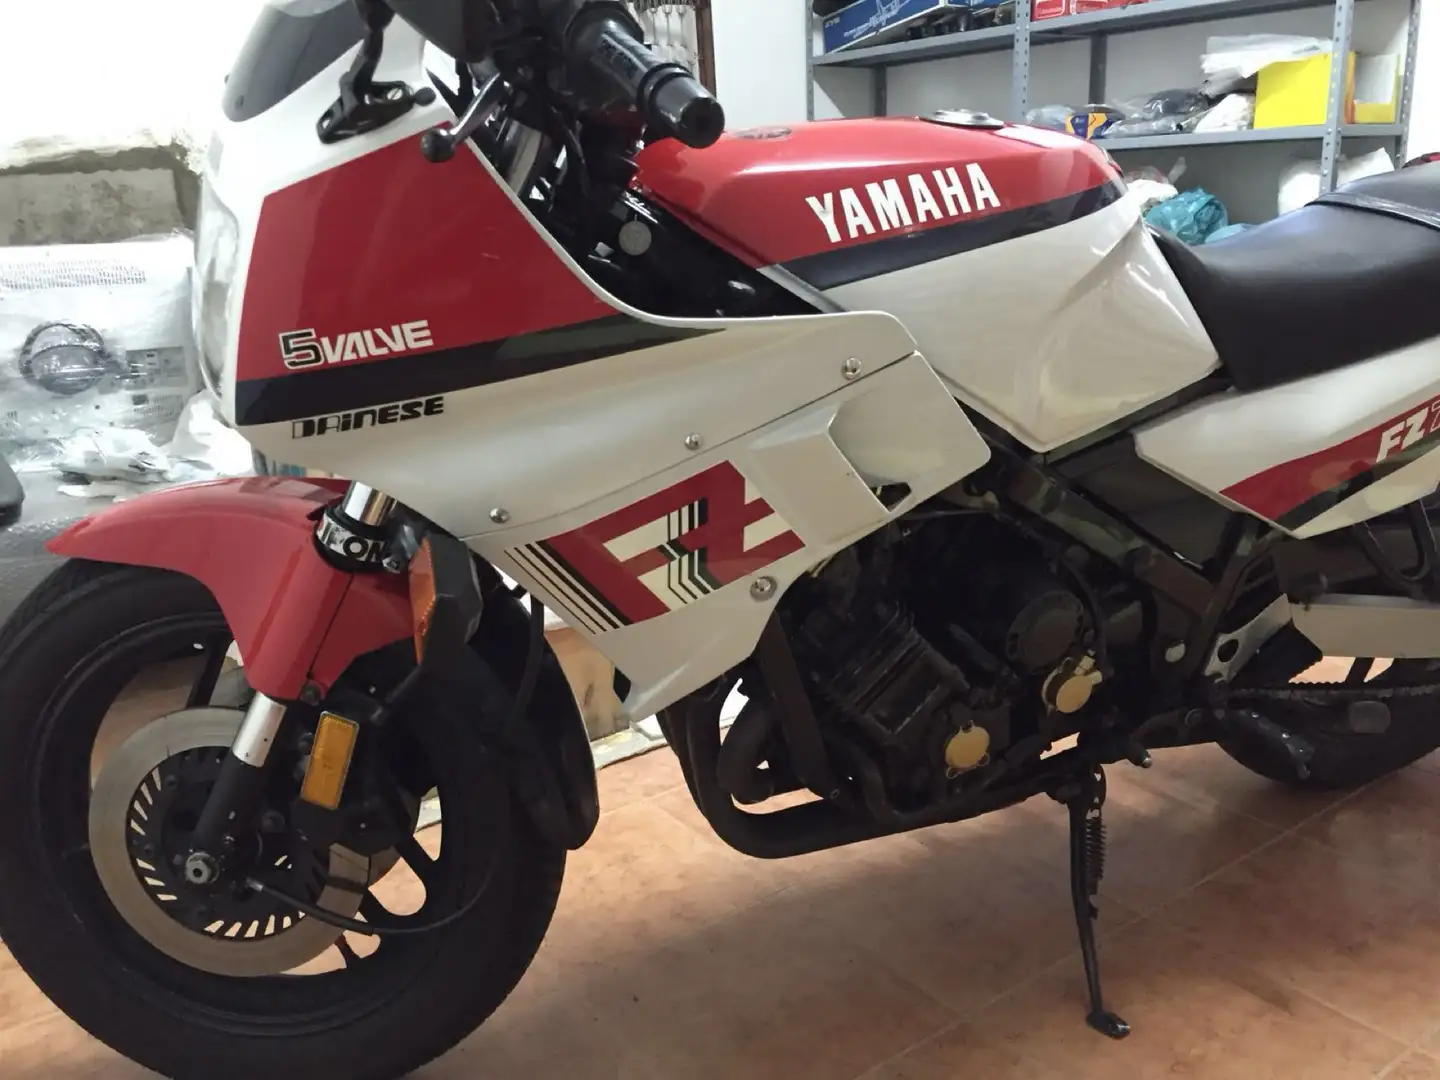 Yamaha FZ 750 immatricolazione canada colorazione bianca rossa Wit - 1